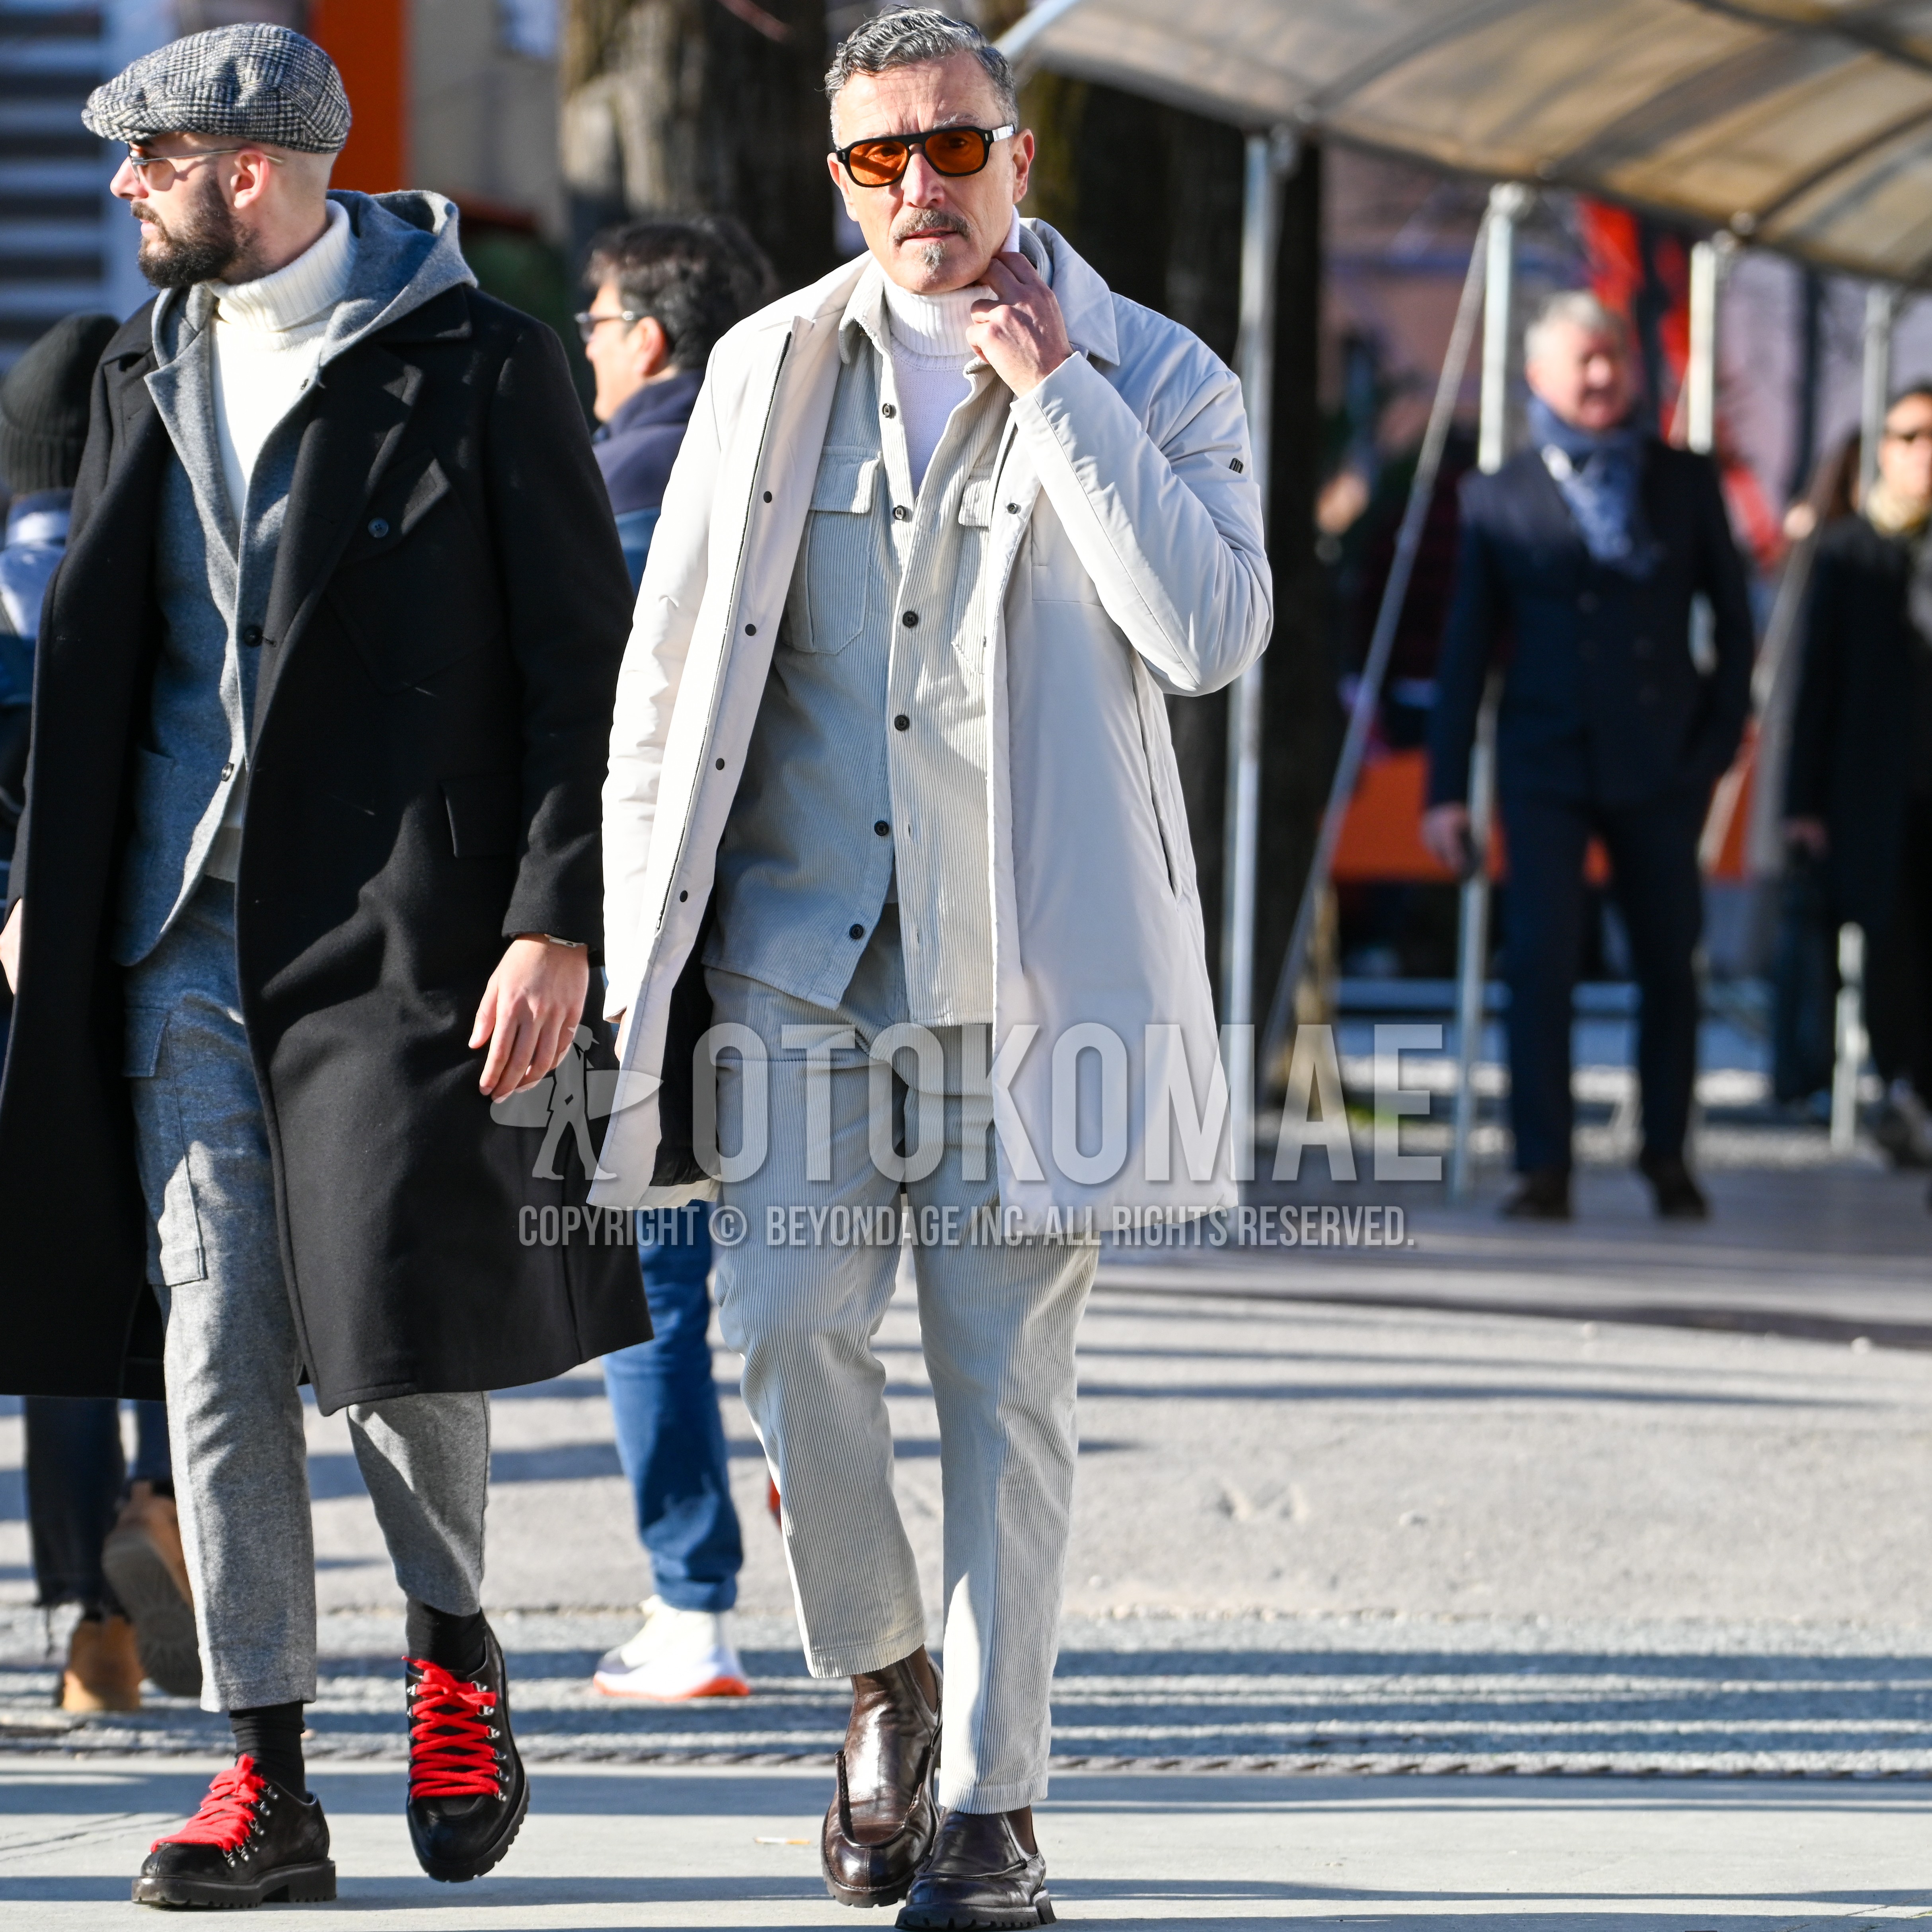 Men's autumn winter outfit with black plain sunglasses, white plain stenkarrer coat, beige plain shirt jacket, white plain turtleneck knit, beige plain winter pants (corduroy,velour), brown side-gore boots.